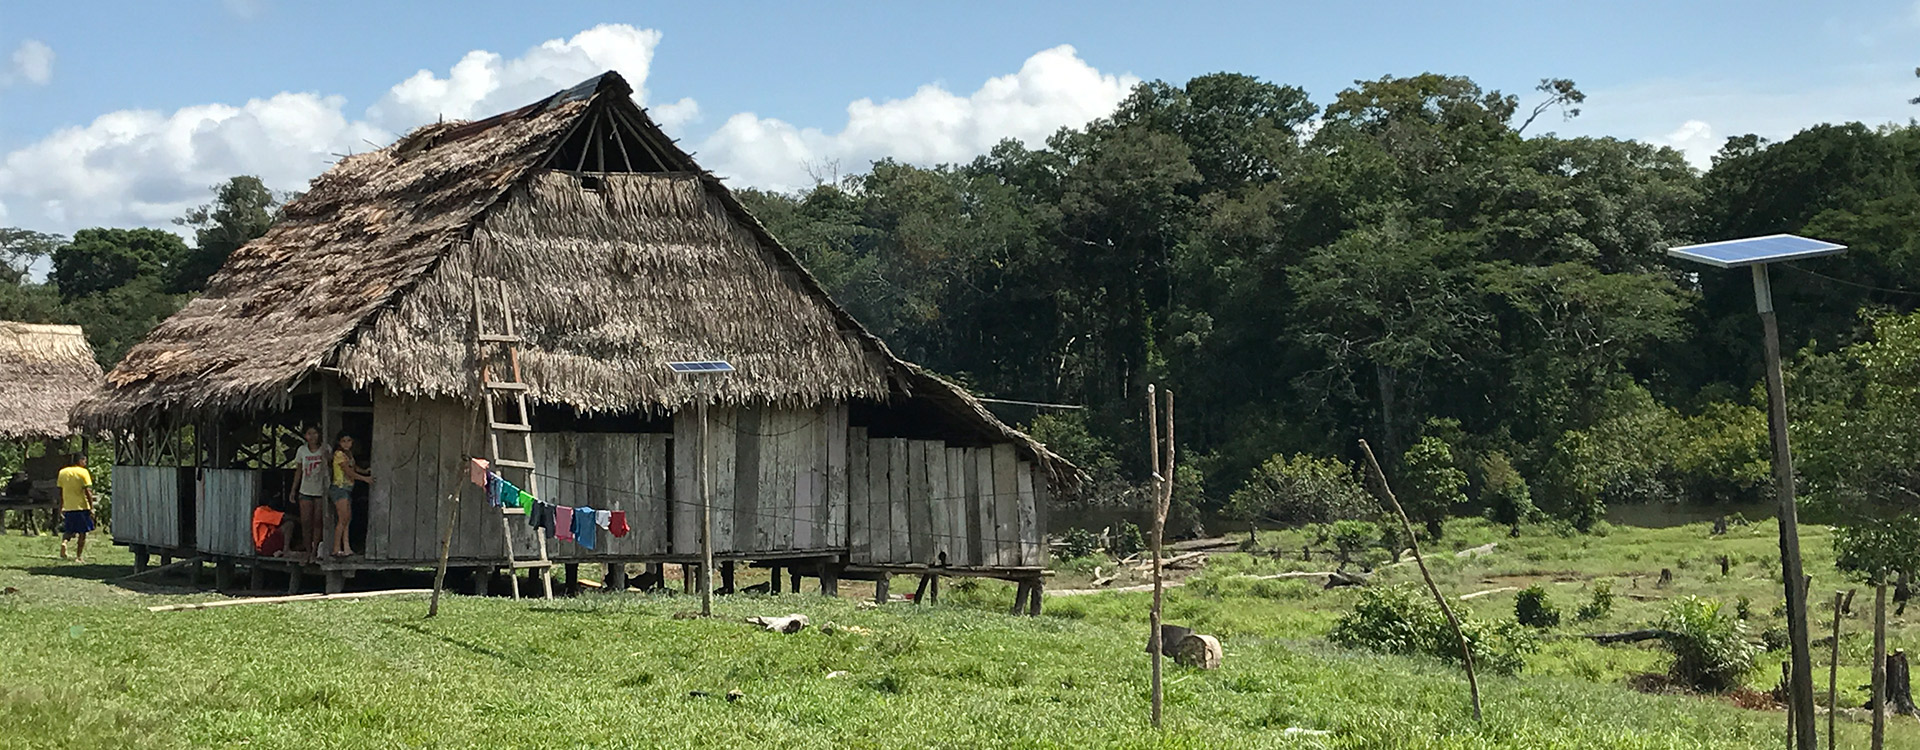 Casa en la cuenca del río Napo, Perú